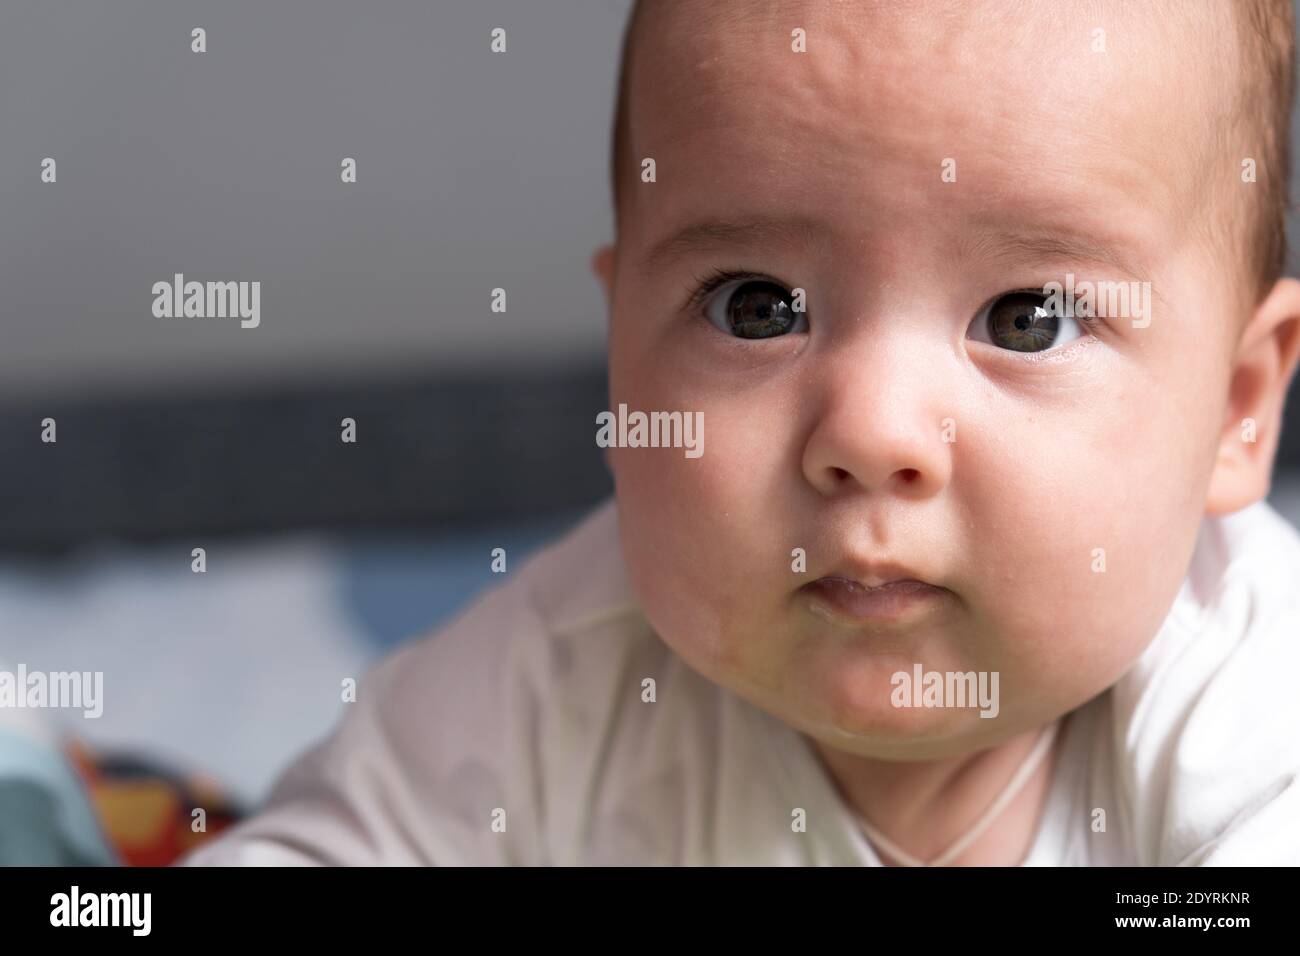 Kindheit, Glück, Mutterschaft Konzepte - Säugling überrascht, lustige neugeborene Kind Baby im Alter von 3-4 Monaten spielen mit Spielzeug, nagende Zahnstocher auf Stockfoto